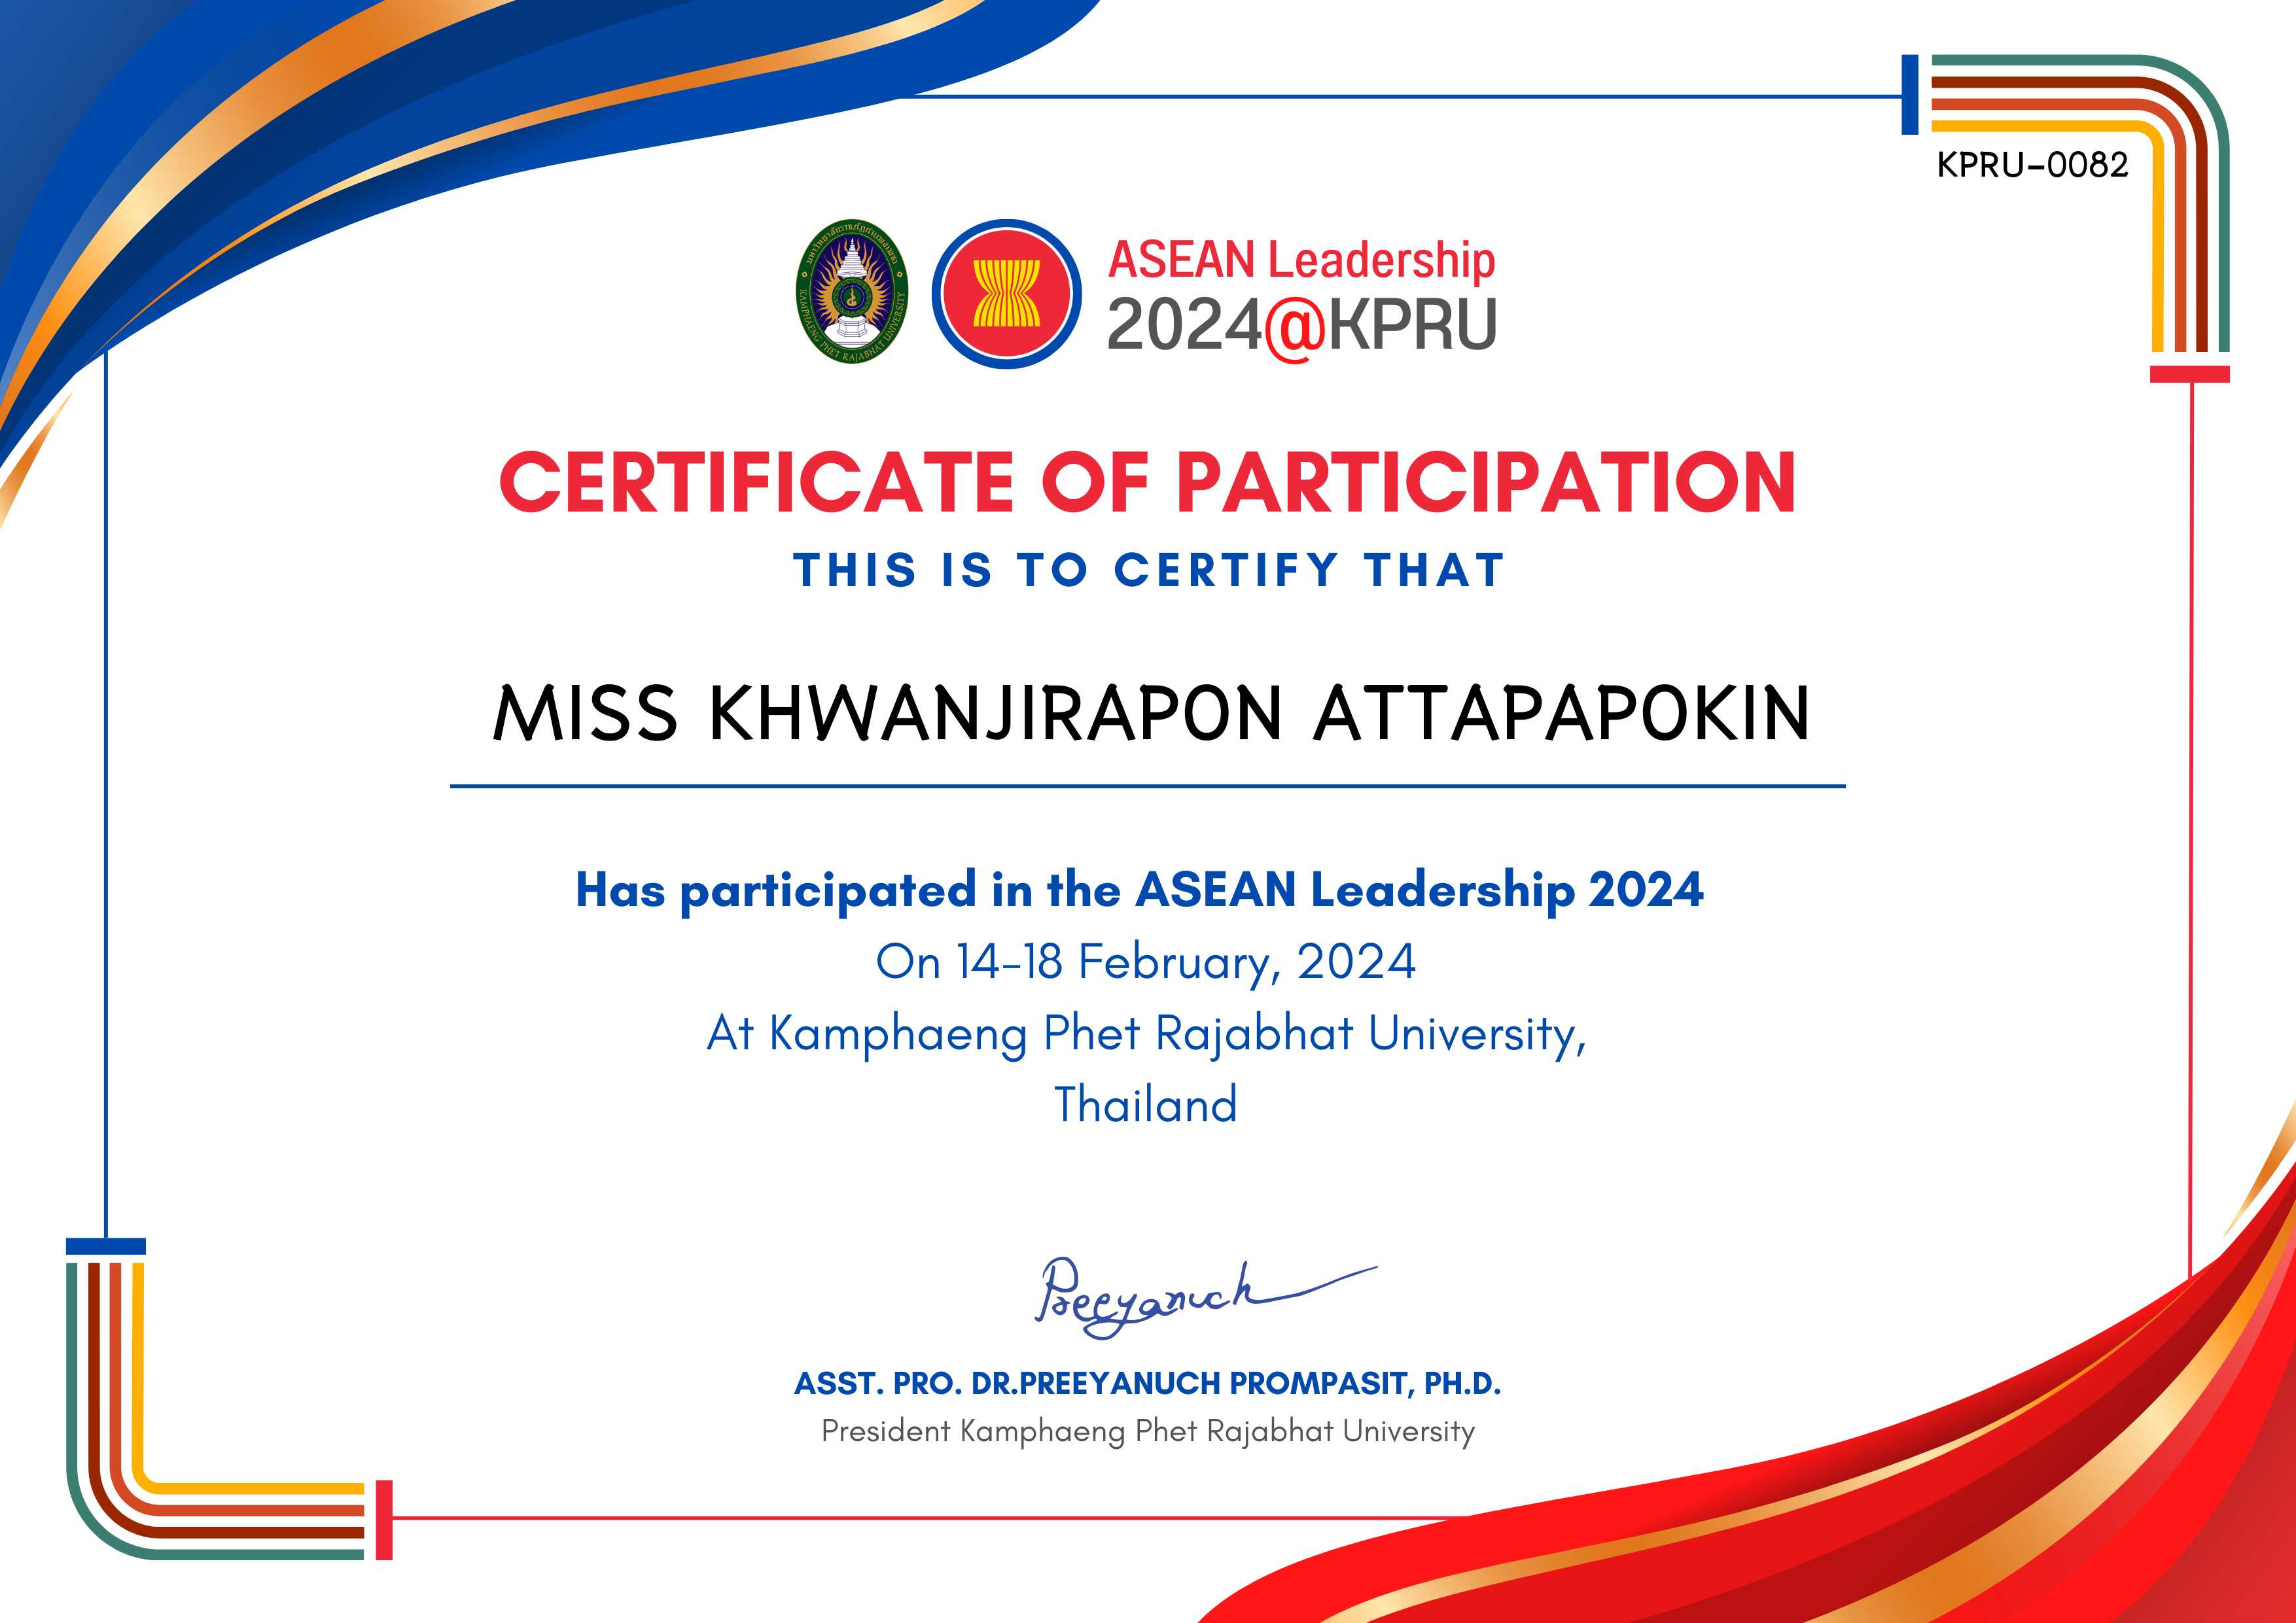 เกียรติบัตร ASEAN Leadership 2024-participated ของ MISS KHWANJIRAPON ATTAPAPOKIN